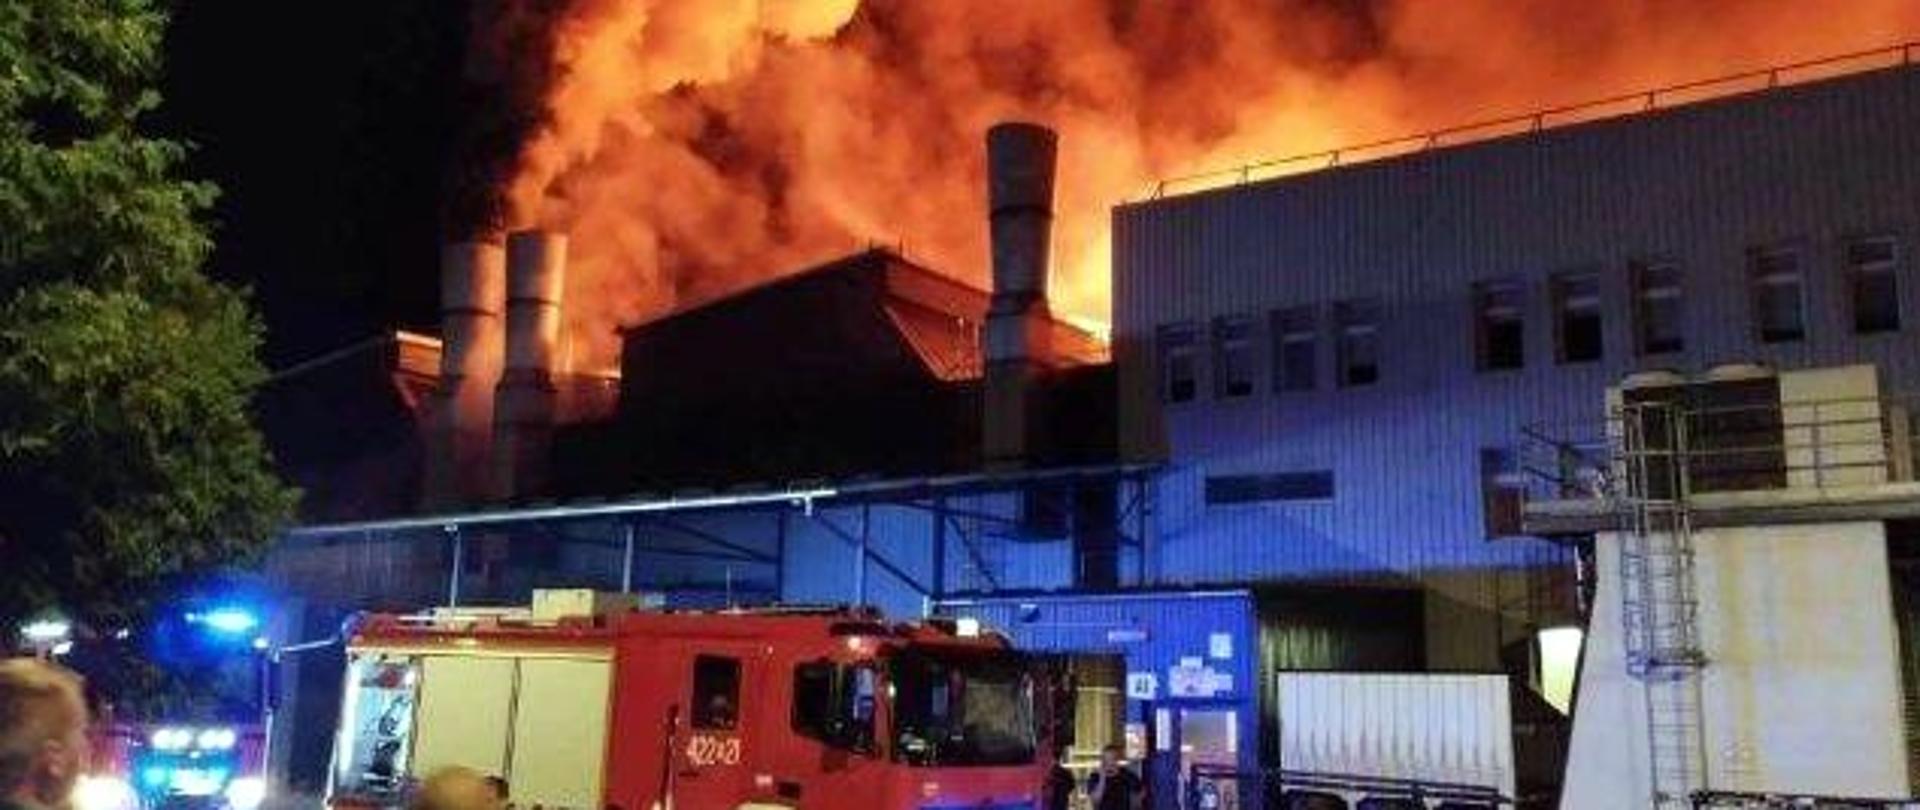 Zdjęcie zrobione na zewnątrz, podczas gaszenia pożaru zakładu produkcyjnego